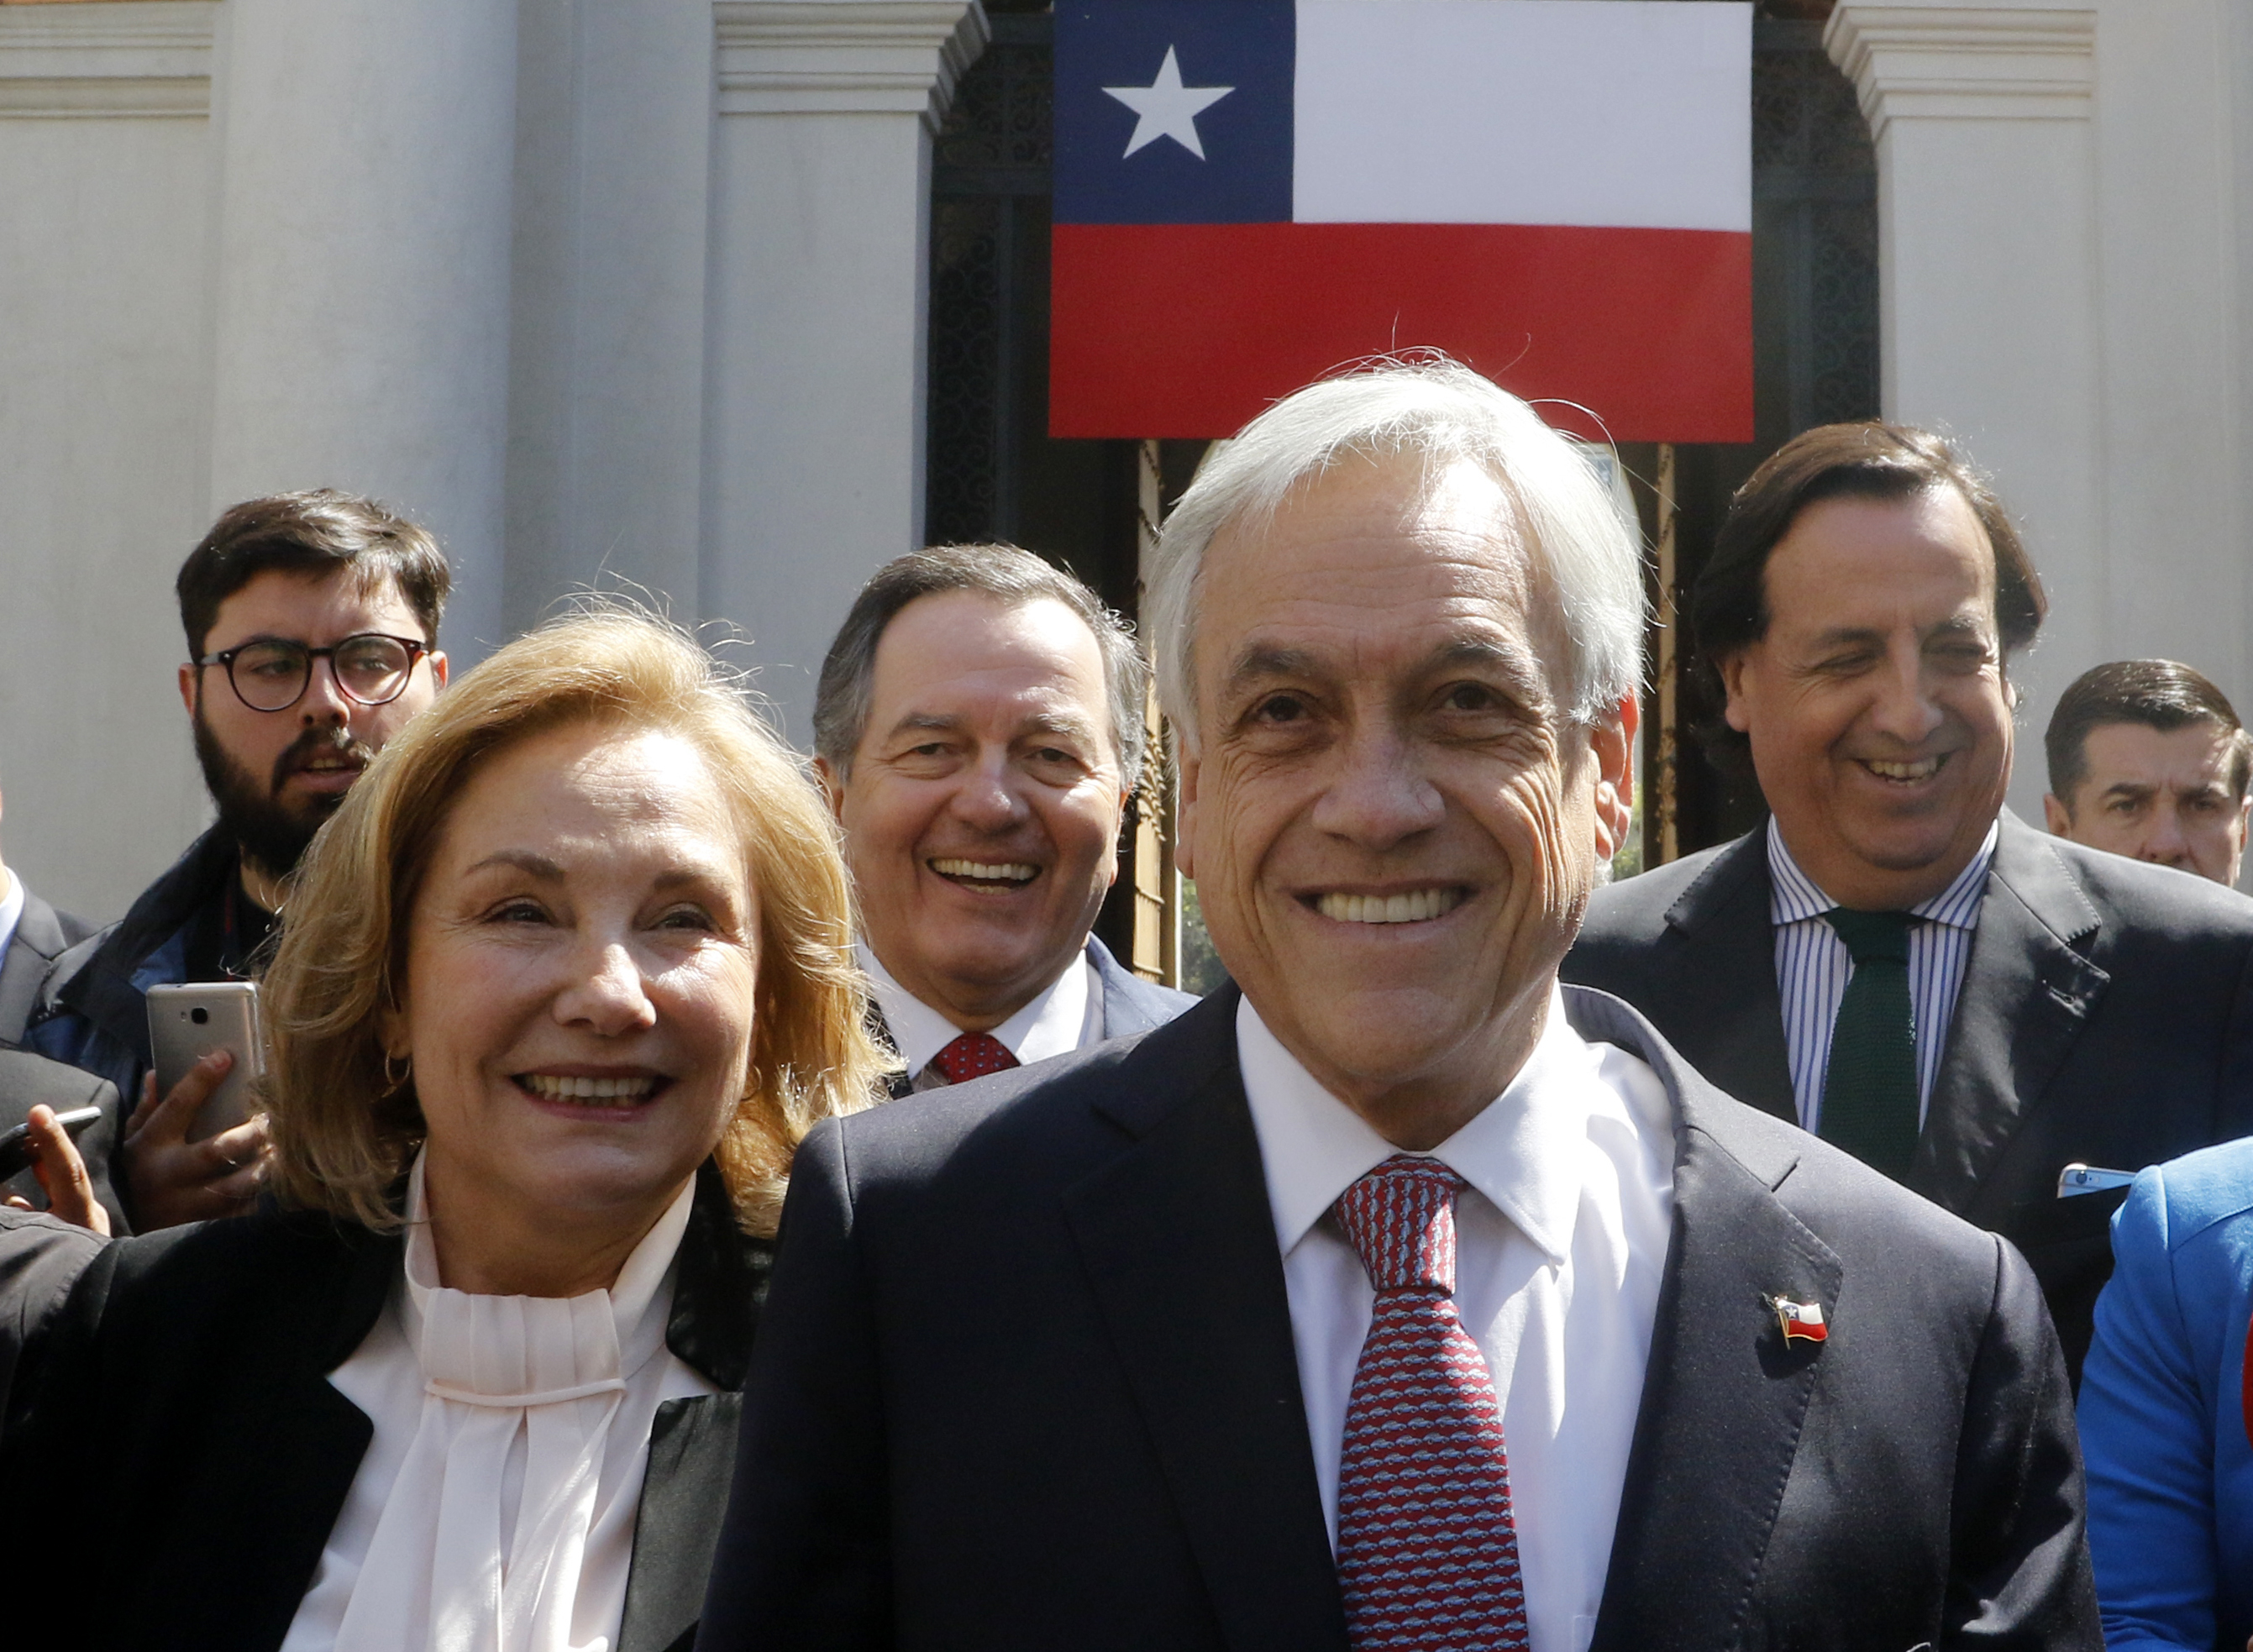 1 de Octubre del 2018/SANTIAGO El Presidente de la Republica Sebastian Piñera, sale a saludar a la gente a la plaza de la Constitución junto a su señora Cecilia Morel y el canciller. FOTO: RODRIGO SAENZ/AGENCIAUNO